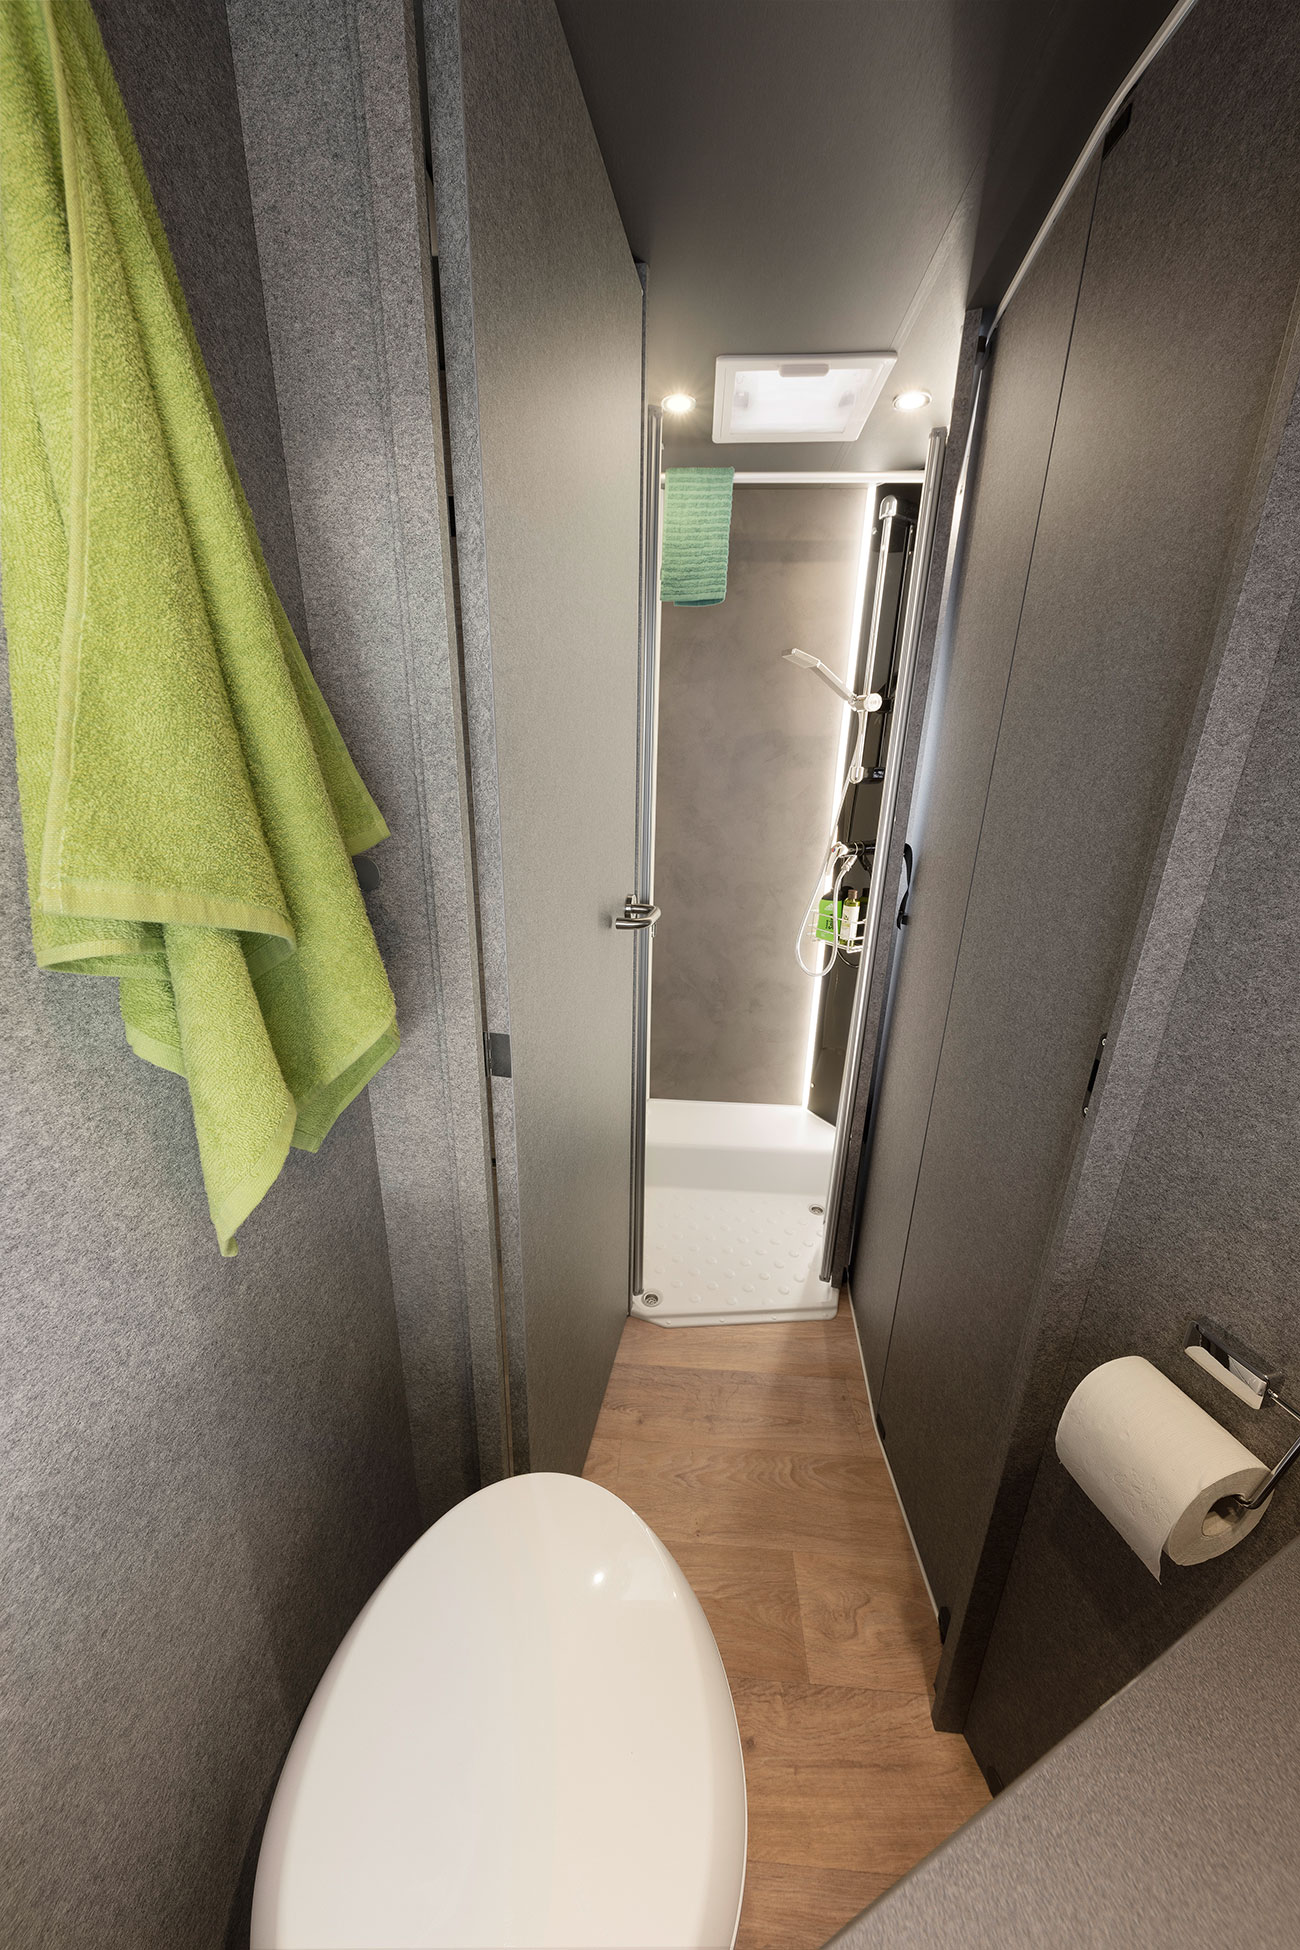 Een slimme oplossing: de ruime badkamer (modelafhankelijk). De badkamerdeur kan gebruikt worden om de doorgang naar de woonruimte af te sluiten. Zo ontstaat een grote was- en aankleedruimte met veel privacy. De badkamer kan van de slaapkamer worden gescheiden door een houten schuifdeur.